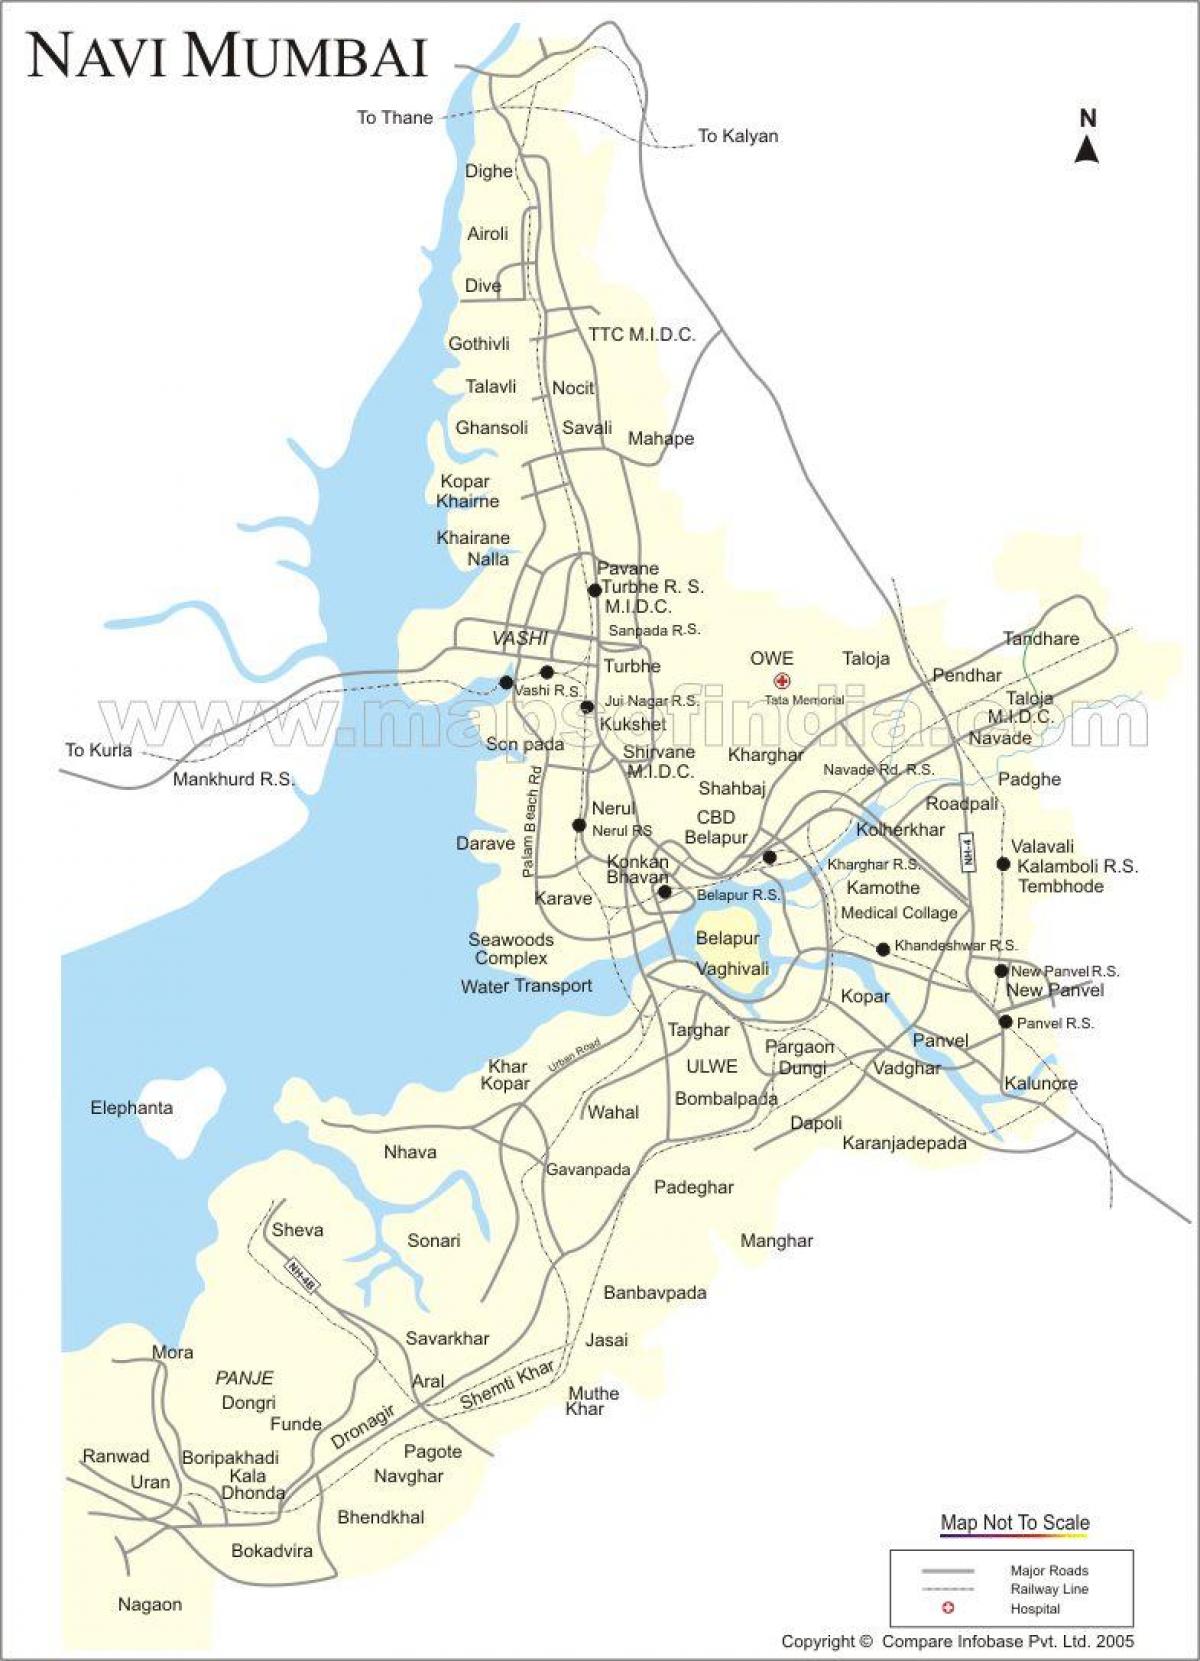 מפה של ניו מומבאי